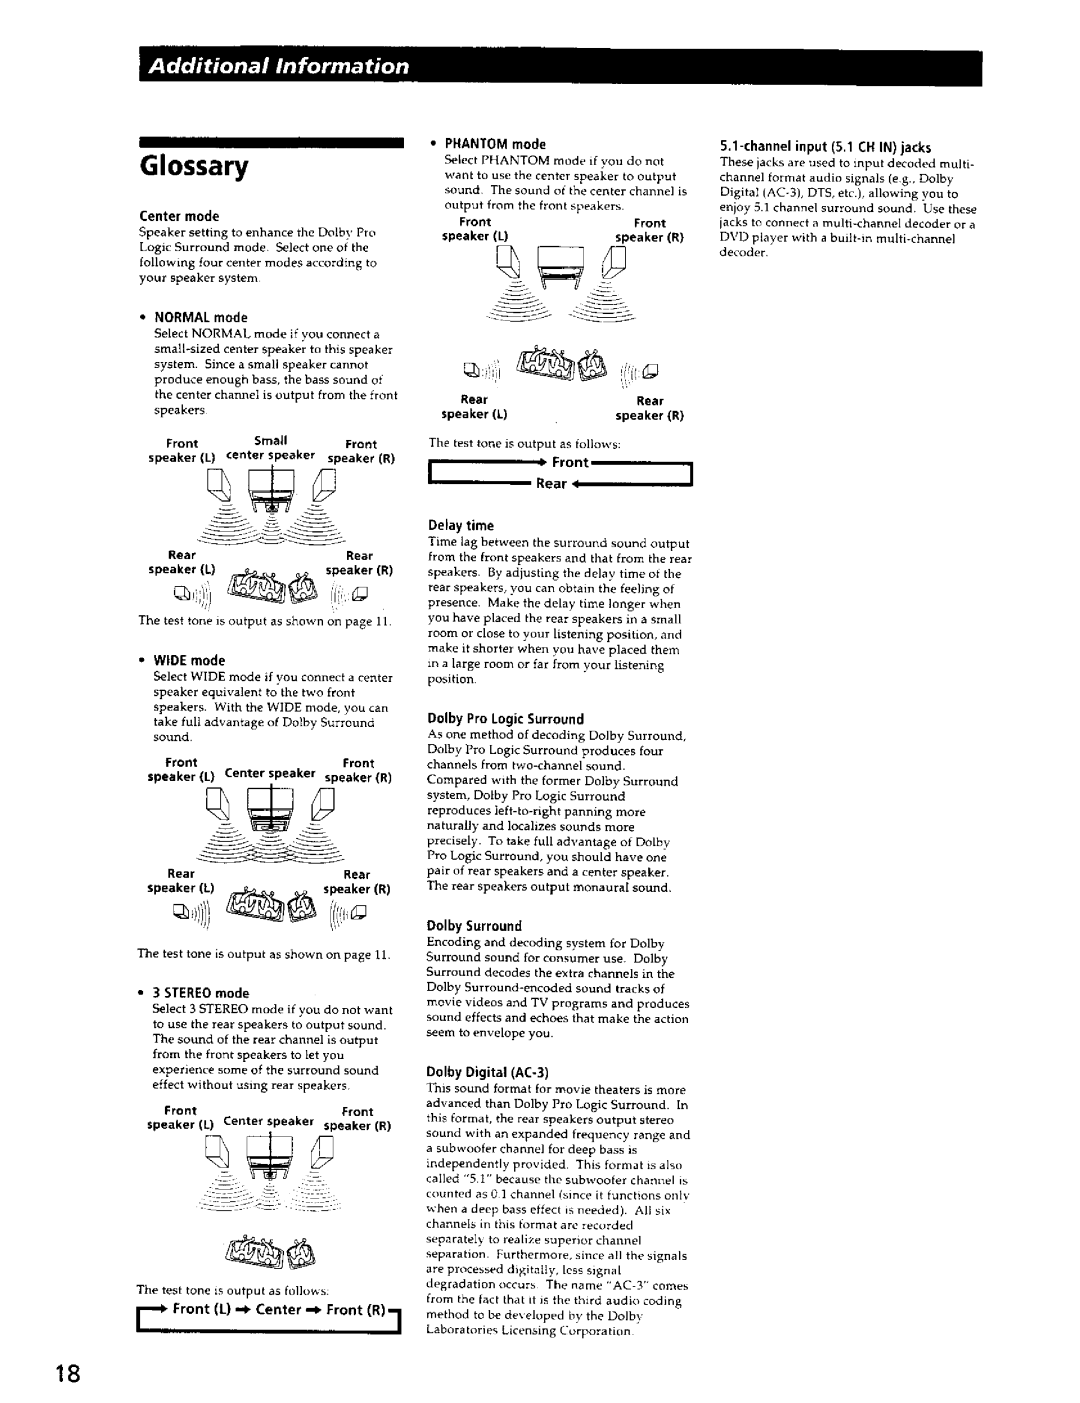 Sony SA-VA700 manual Glossary, OolbySunound 